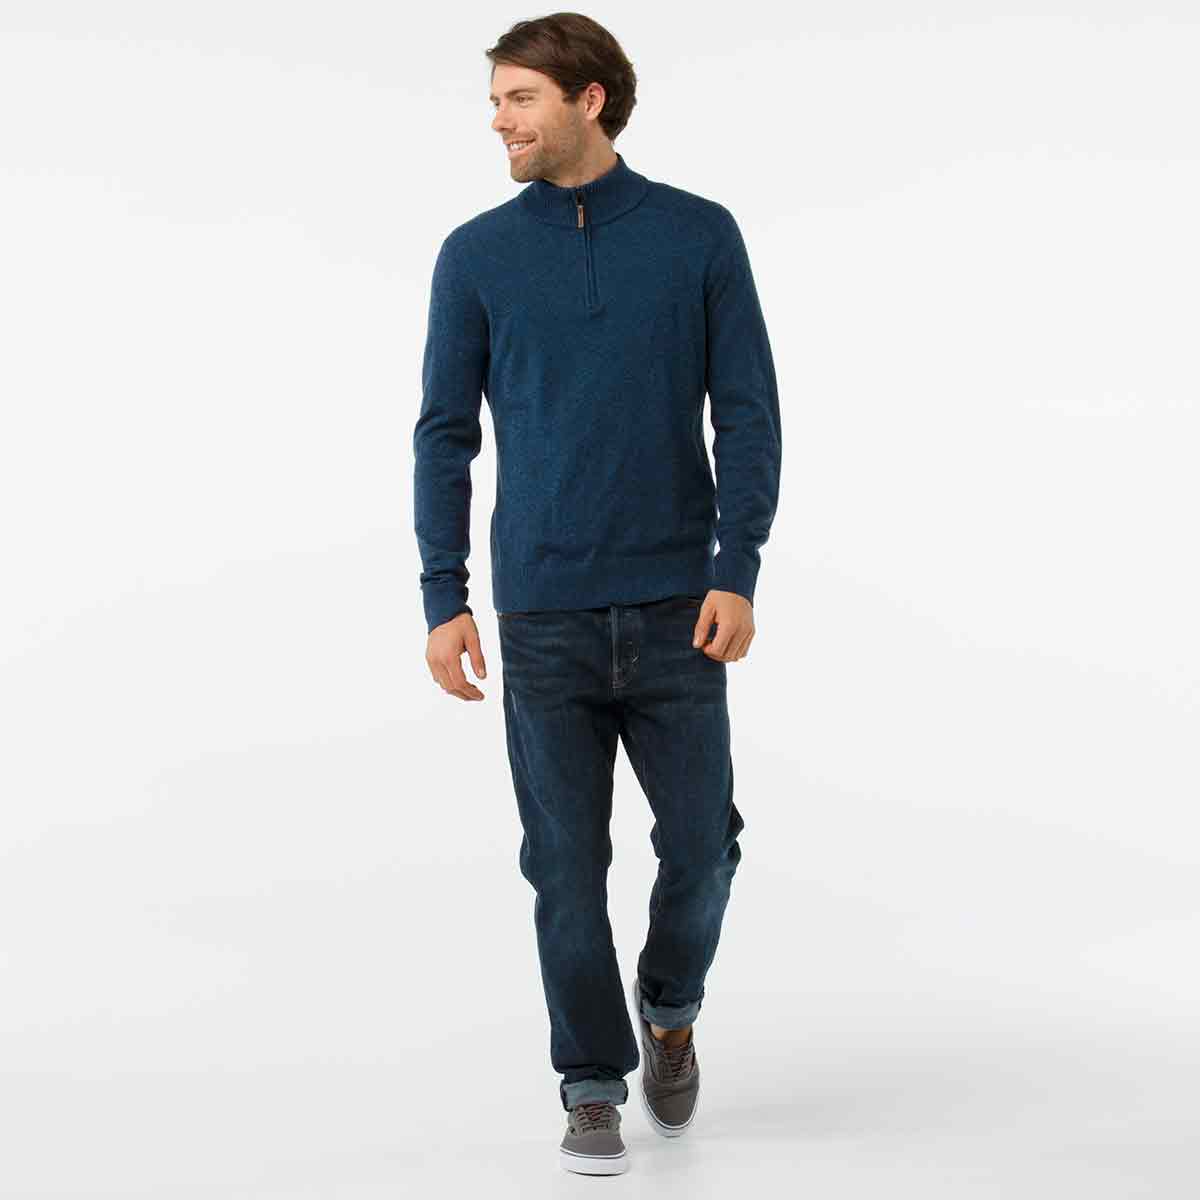 Men's Sparwood Half Zip Sweater